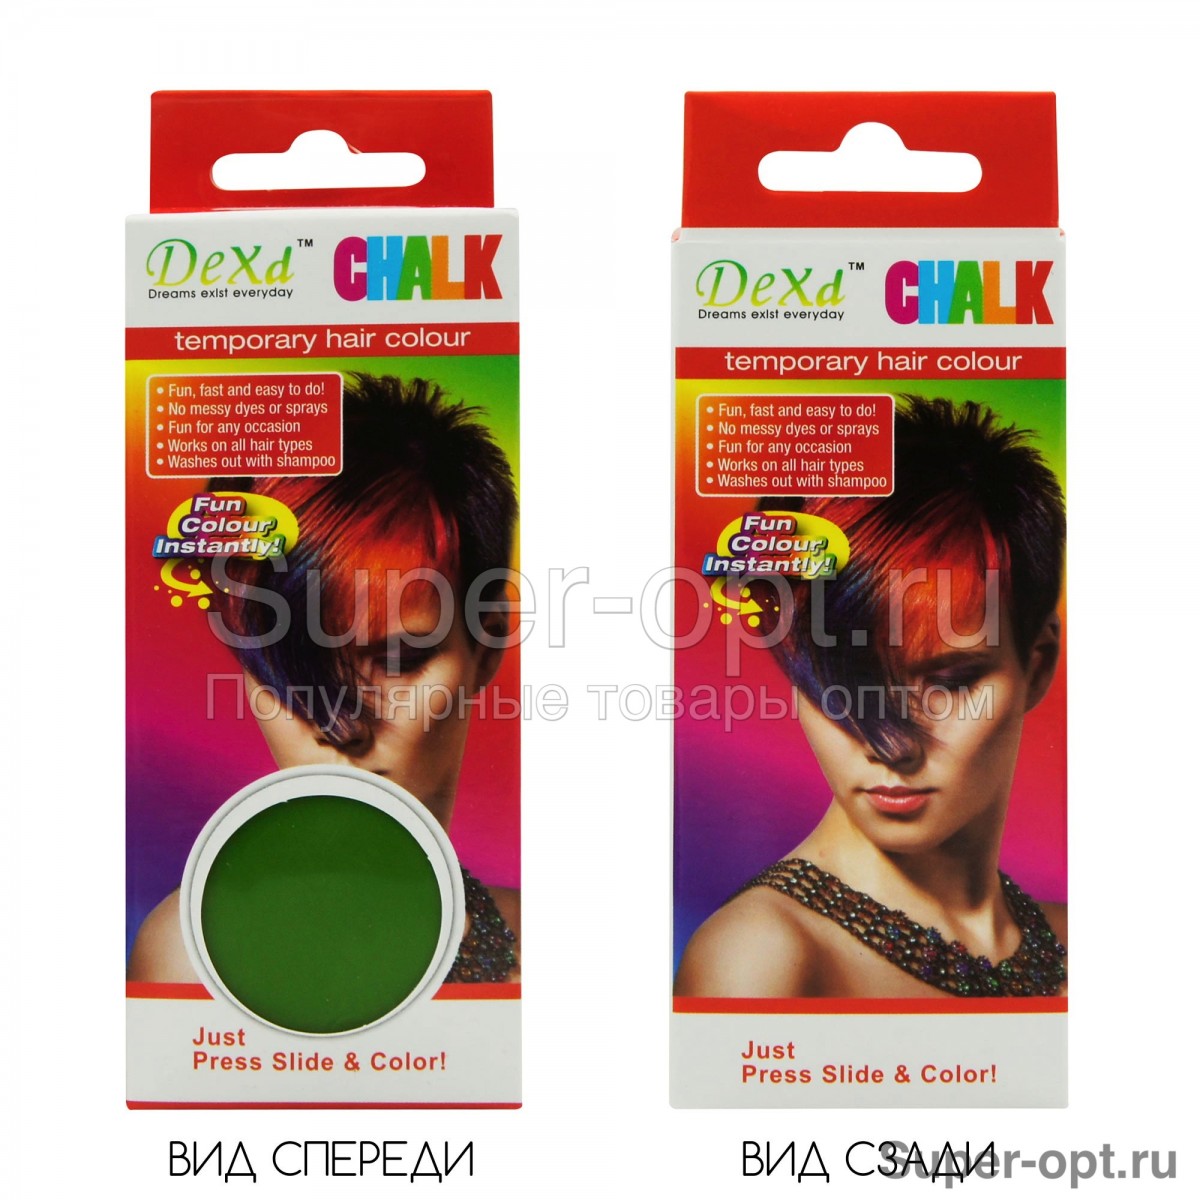 Цветные мелки для окрашивания волос DEXd CHALK